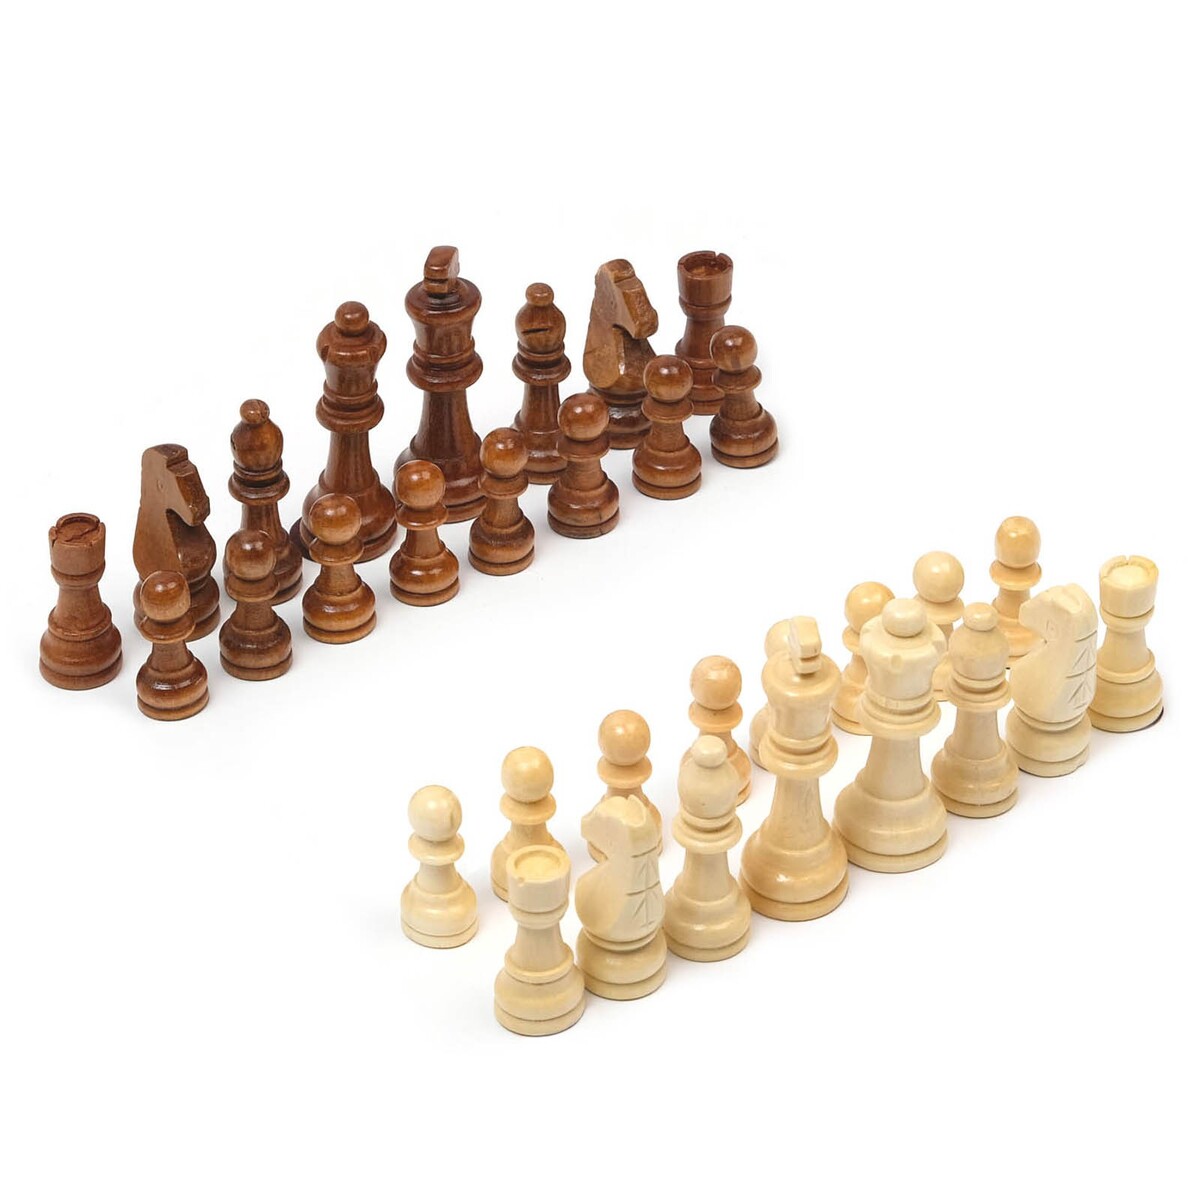 Шахматные фигуры, король h-9 см, пешка h-4 см шахматные звезды и созвездия записки тренера и капитана